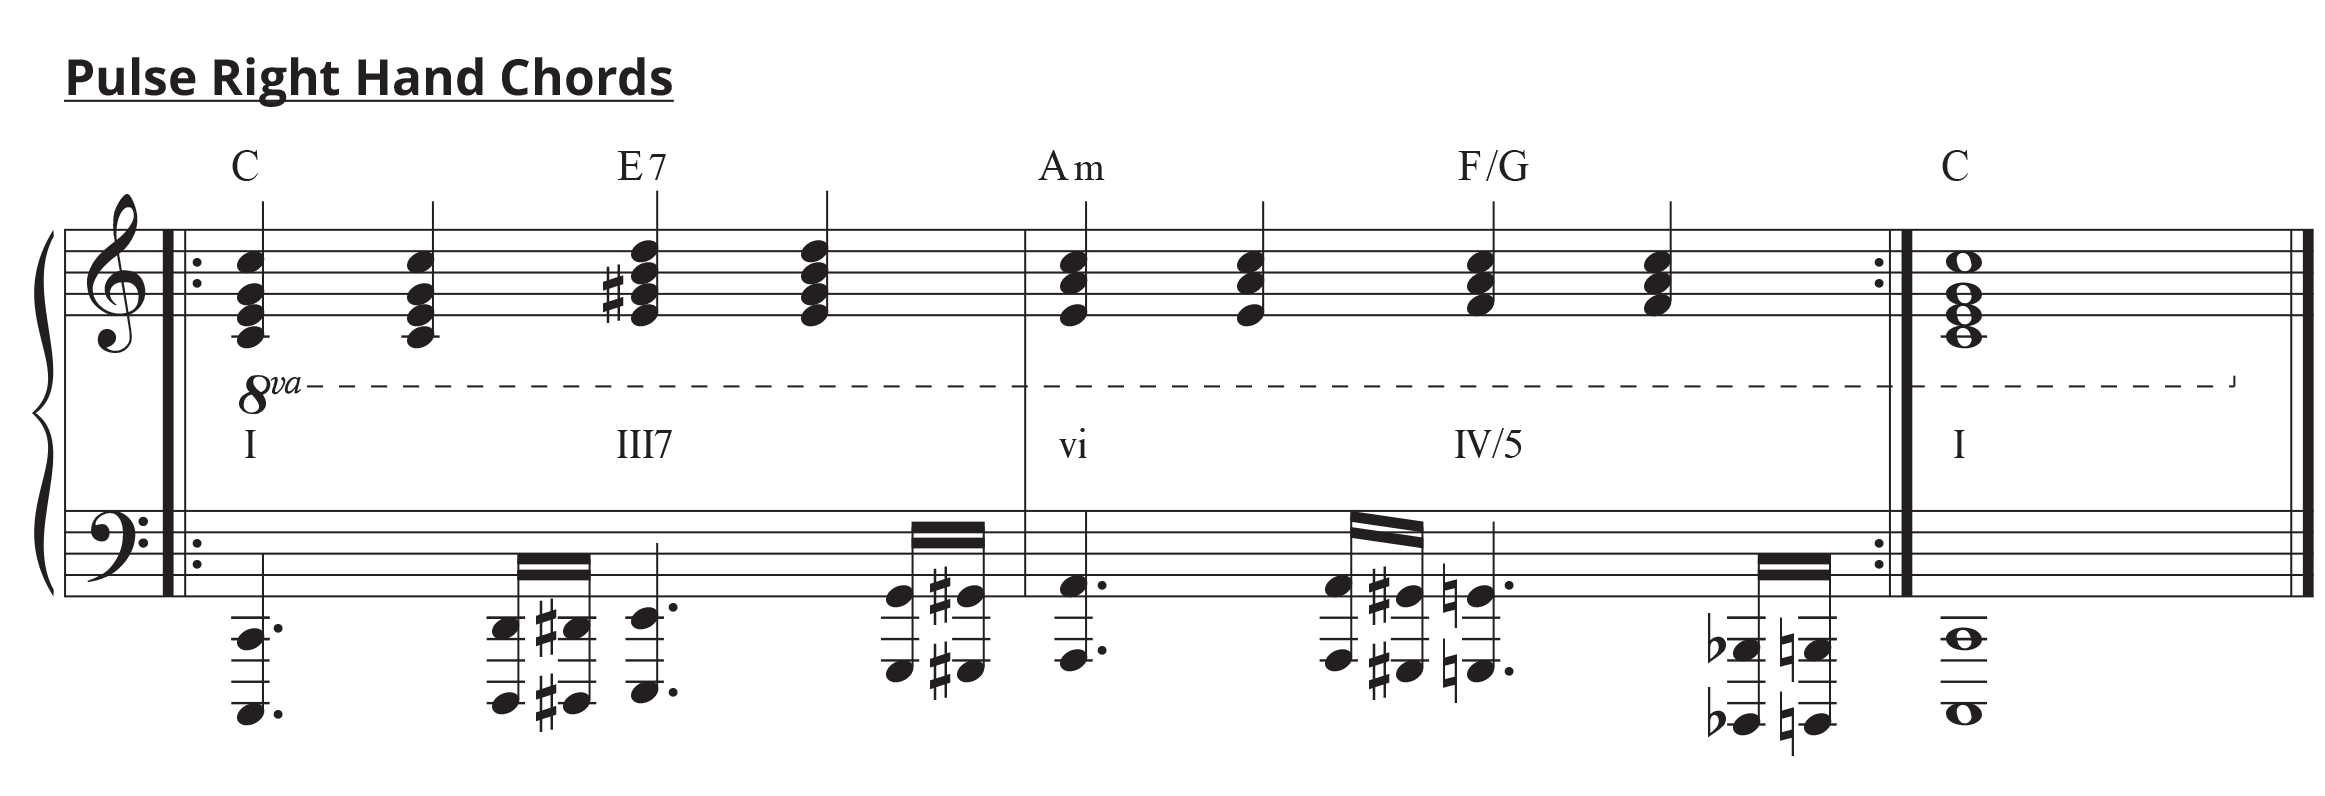 Gospel piano 101: standard notation of pulsing right hand chords.